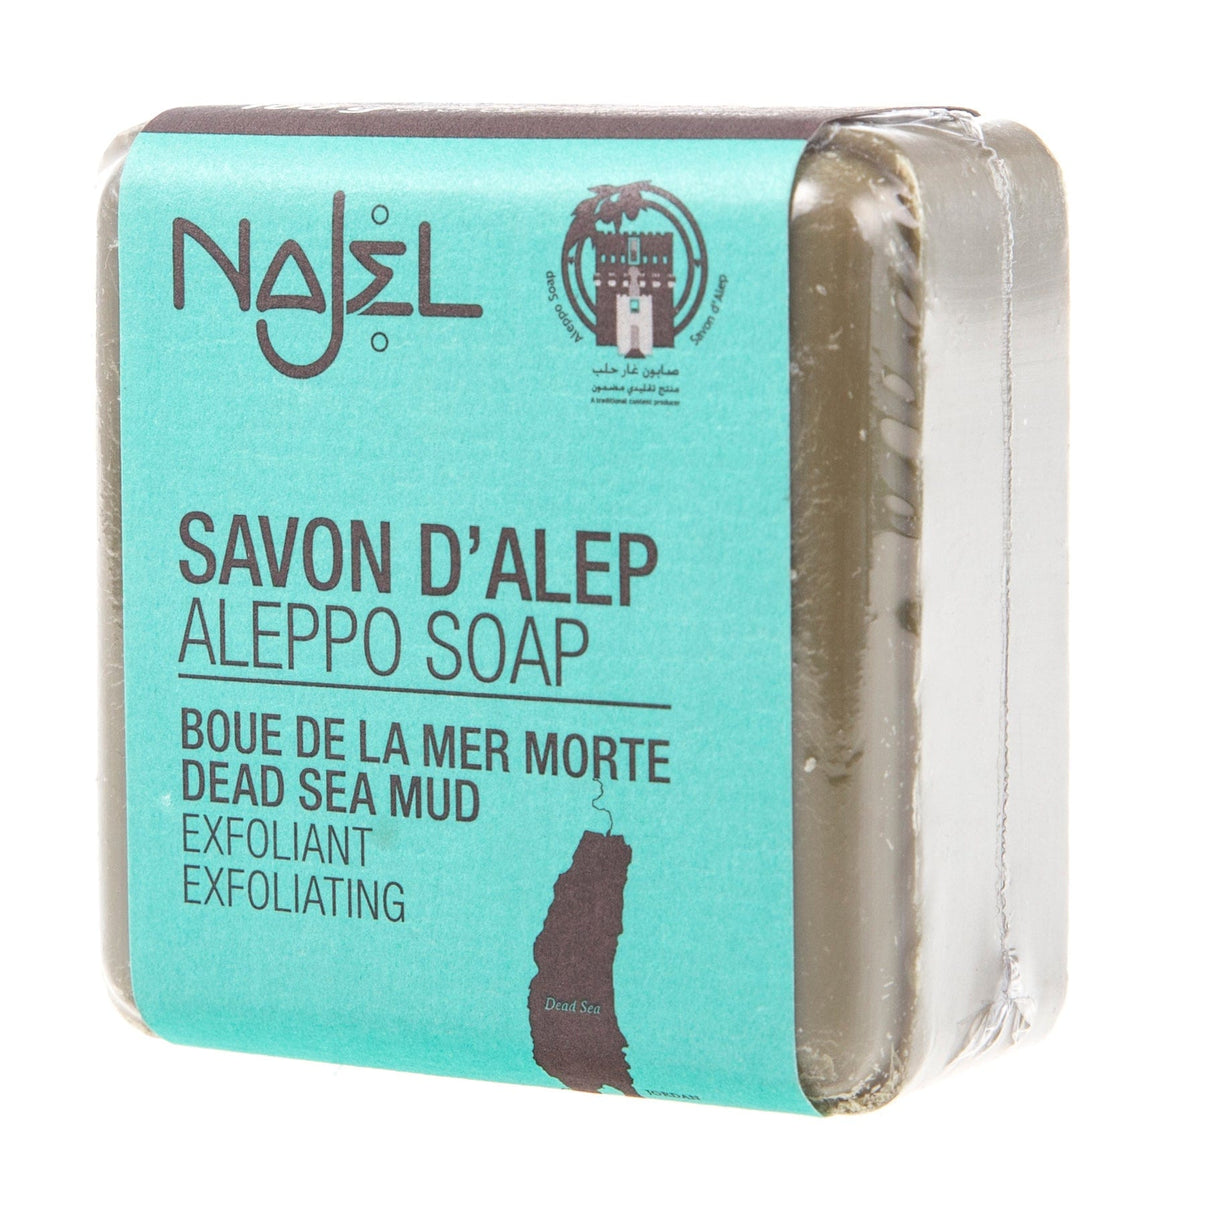 Najel Aleppo soap with Dead Sea mud - 100 g